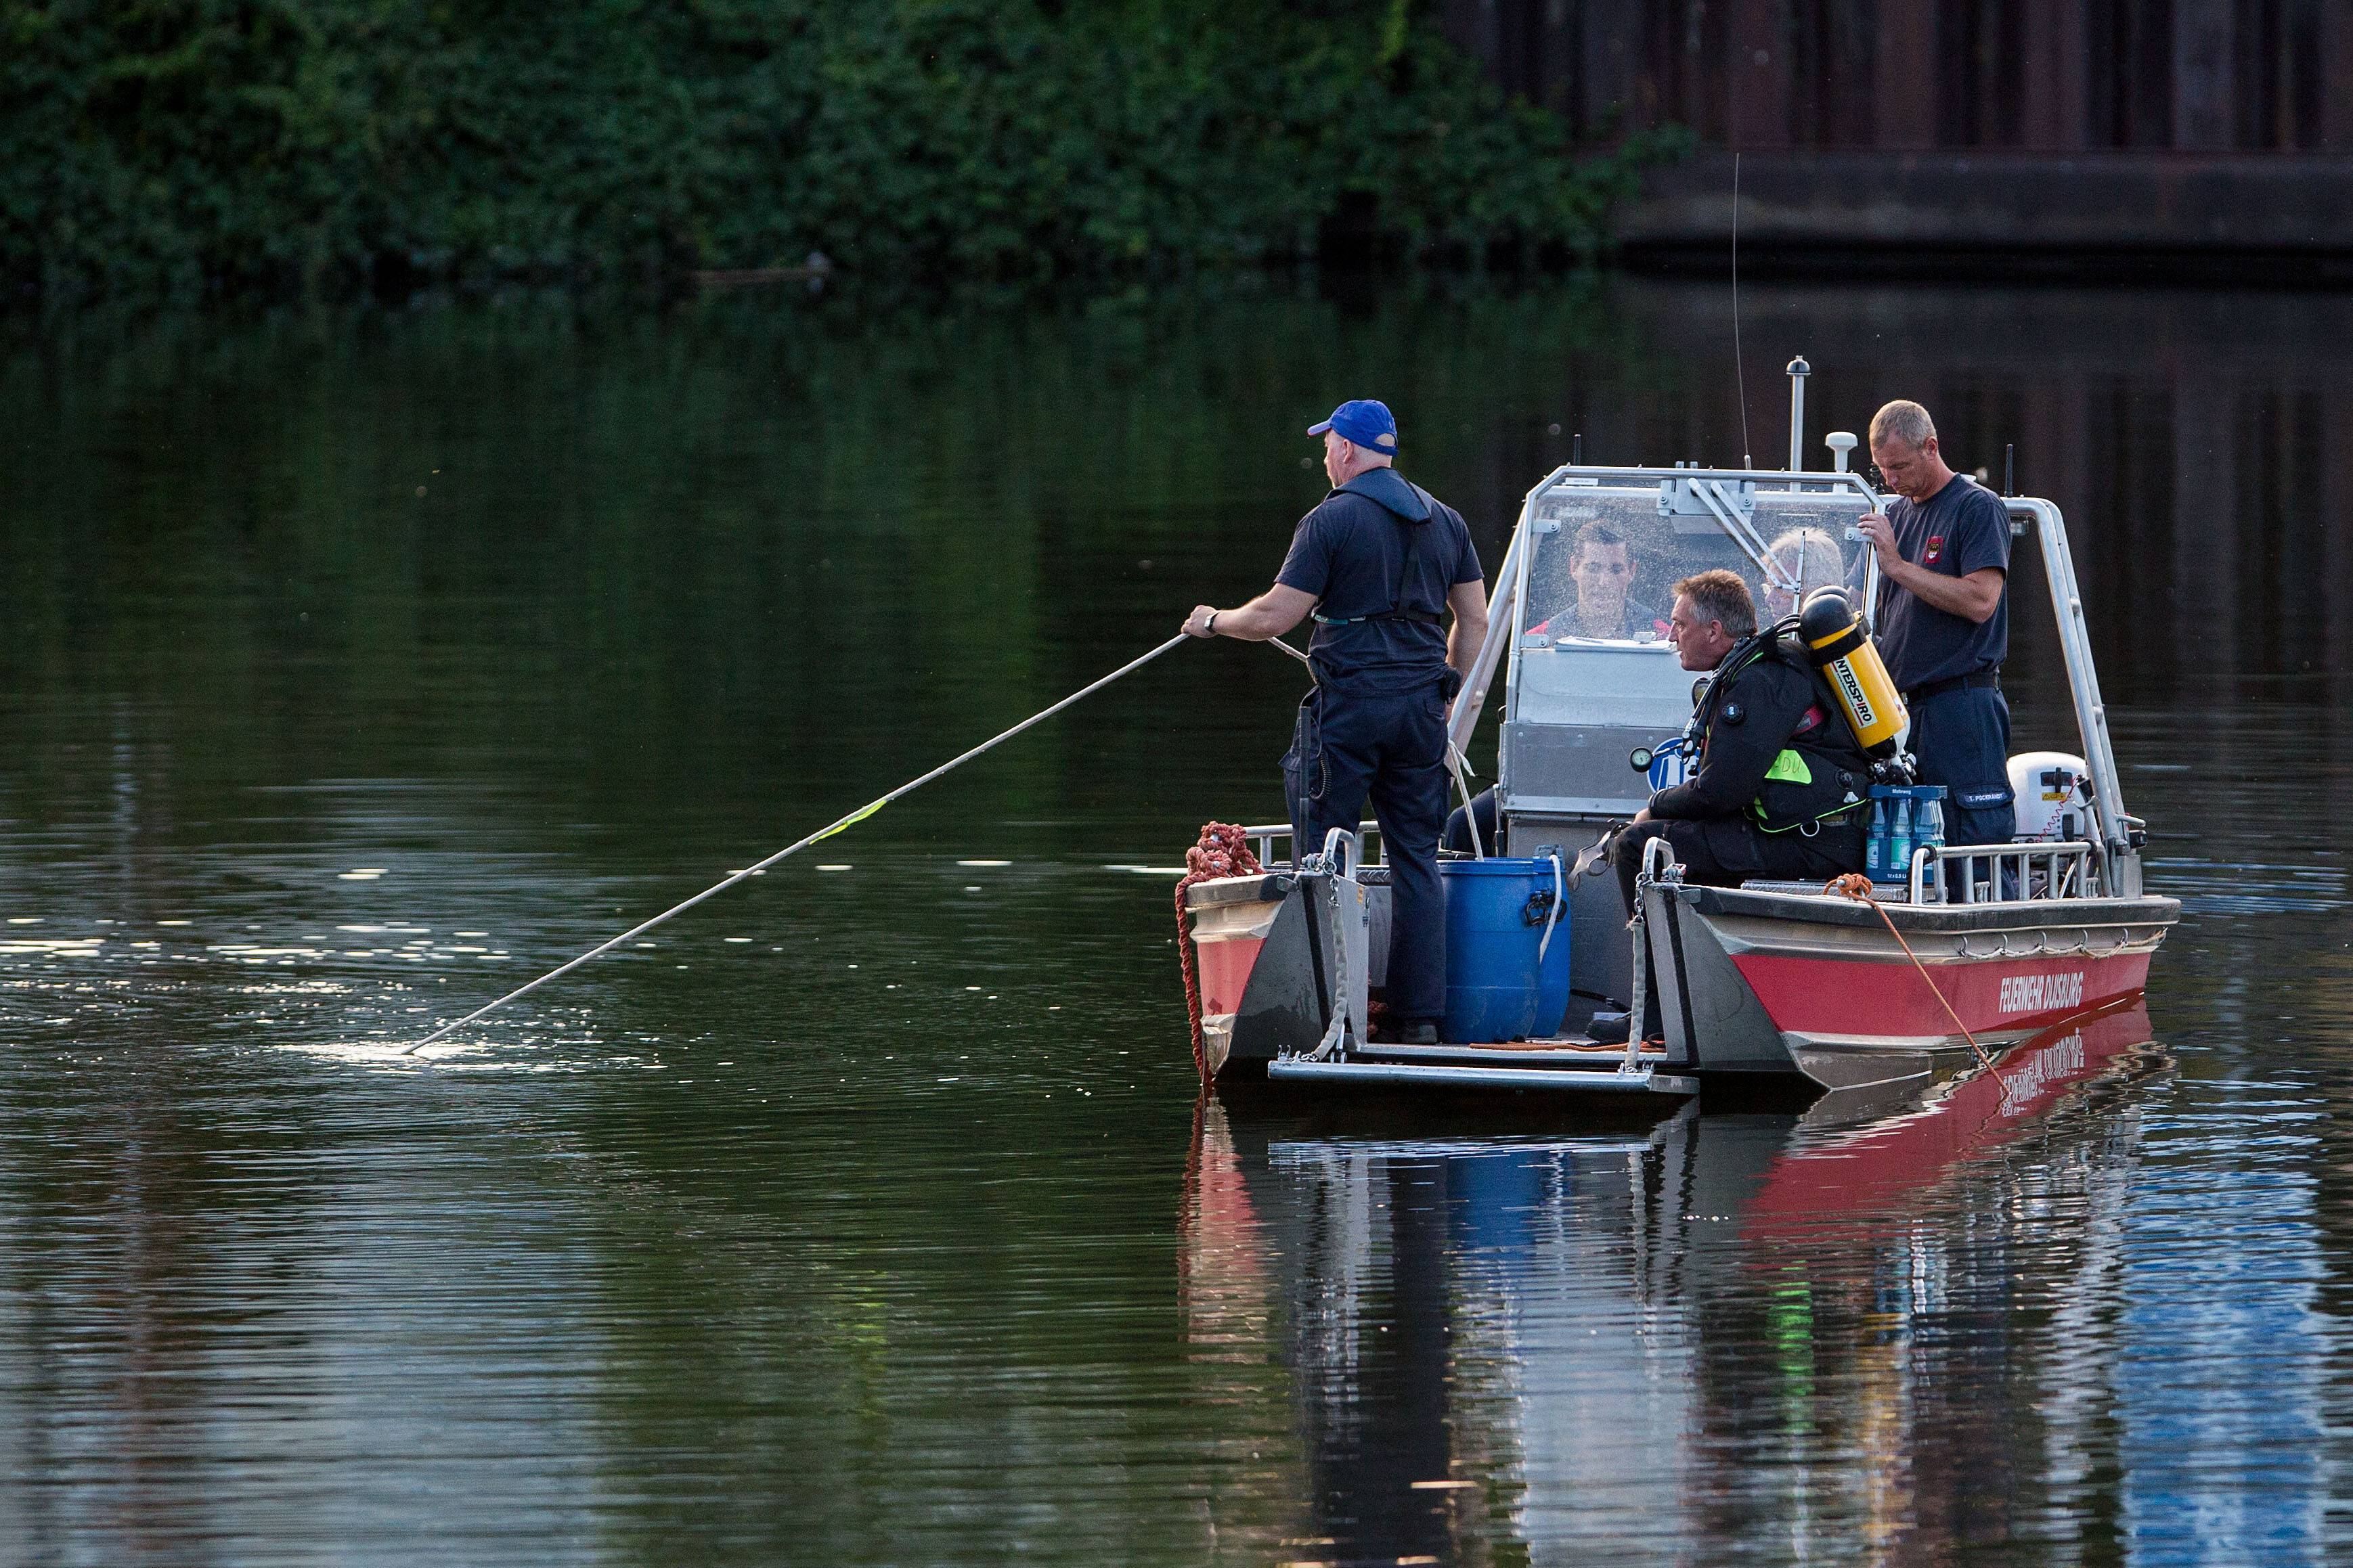 Leiche mit Bleigürtel in der Elbe entdeckt - Polizei ermittelt in rätselhaften Todesfall